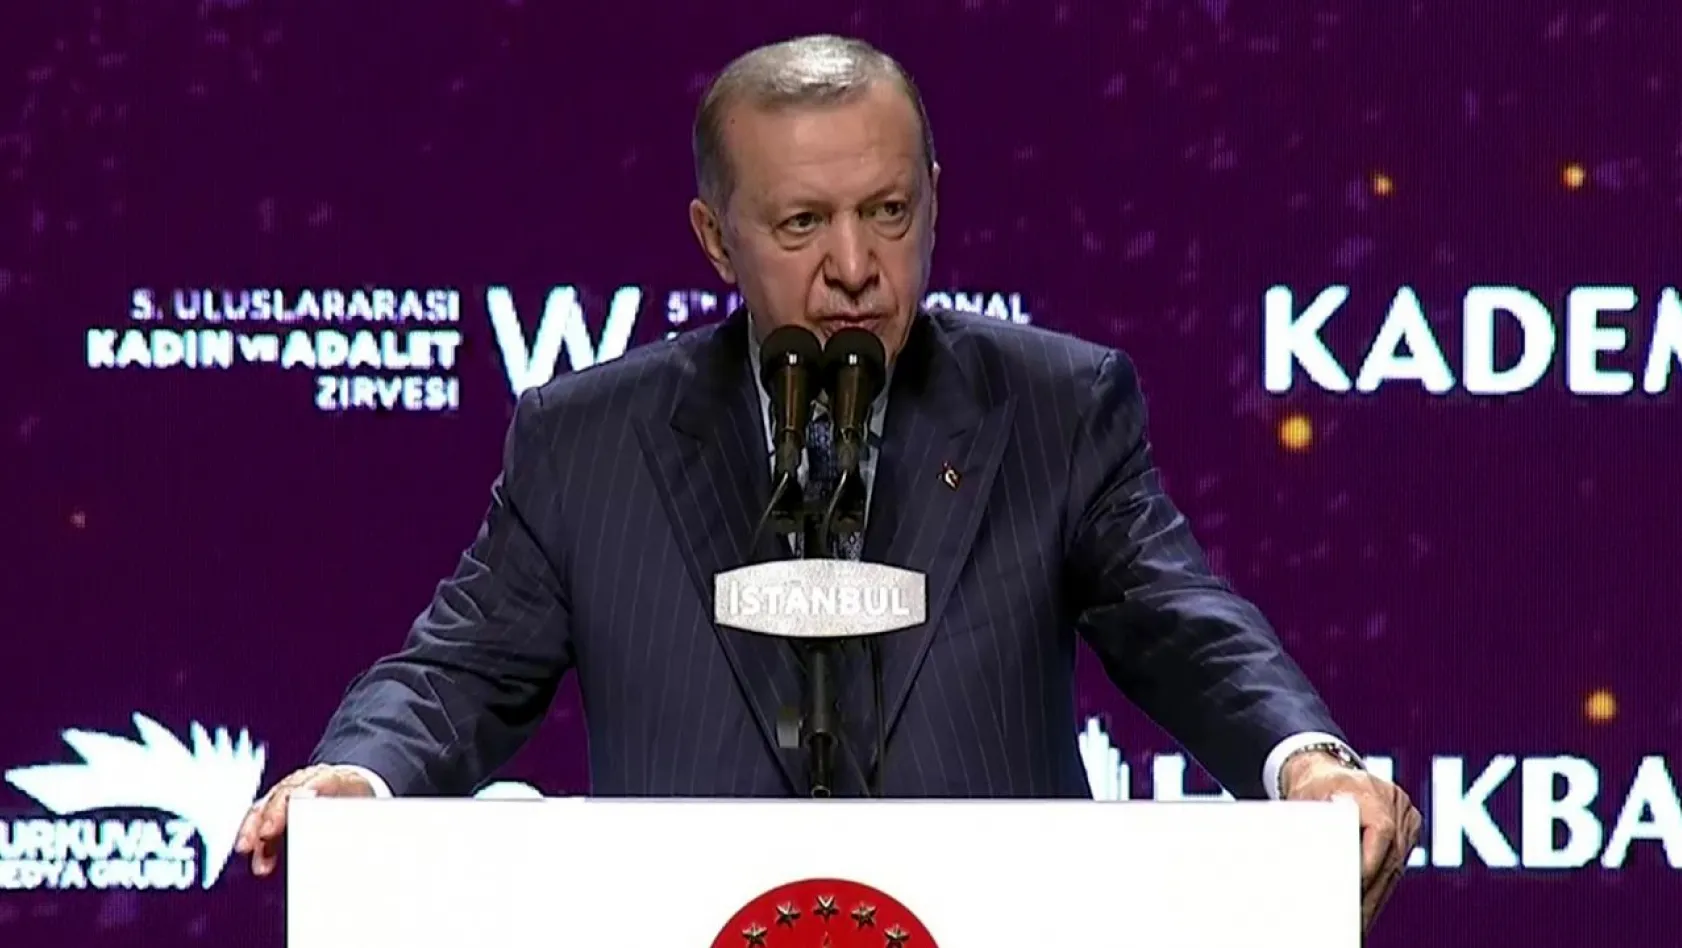 Cumhurbaşkanı Erdoğan TİSK Genel Kurulu'nda konuştu